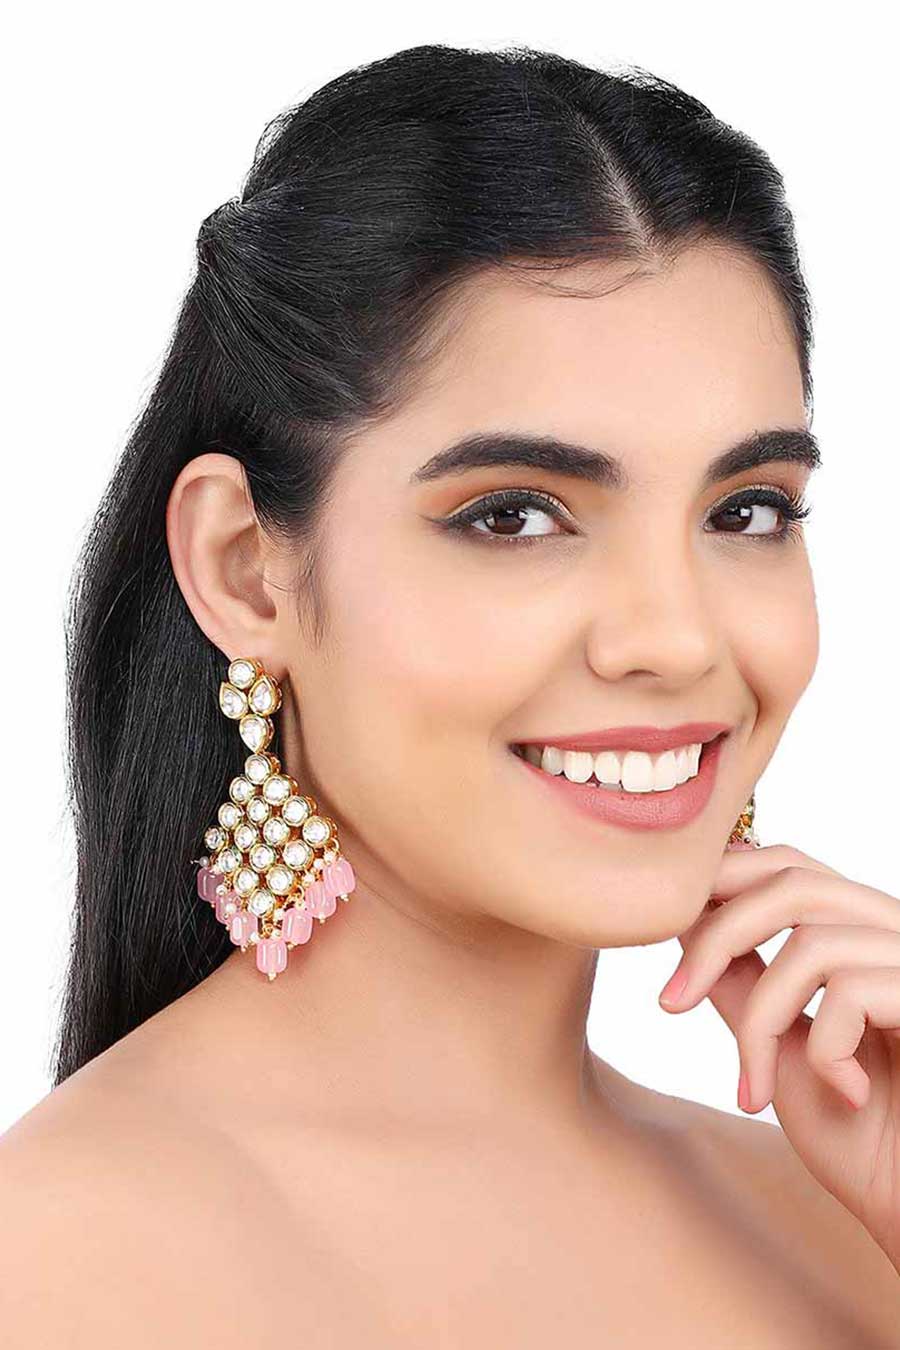 Gold Finish Pink Dangler Earrings